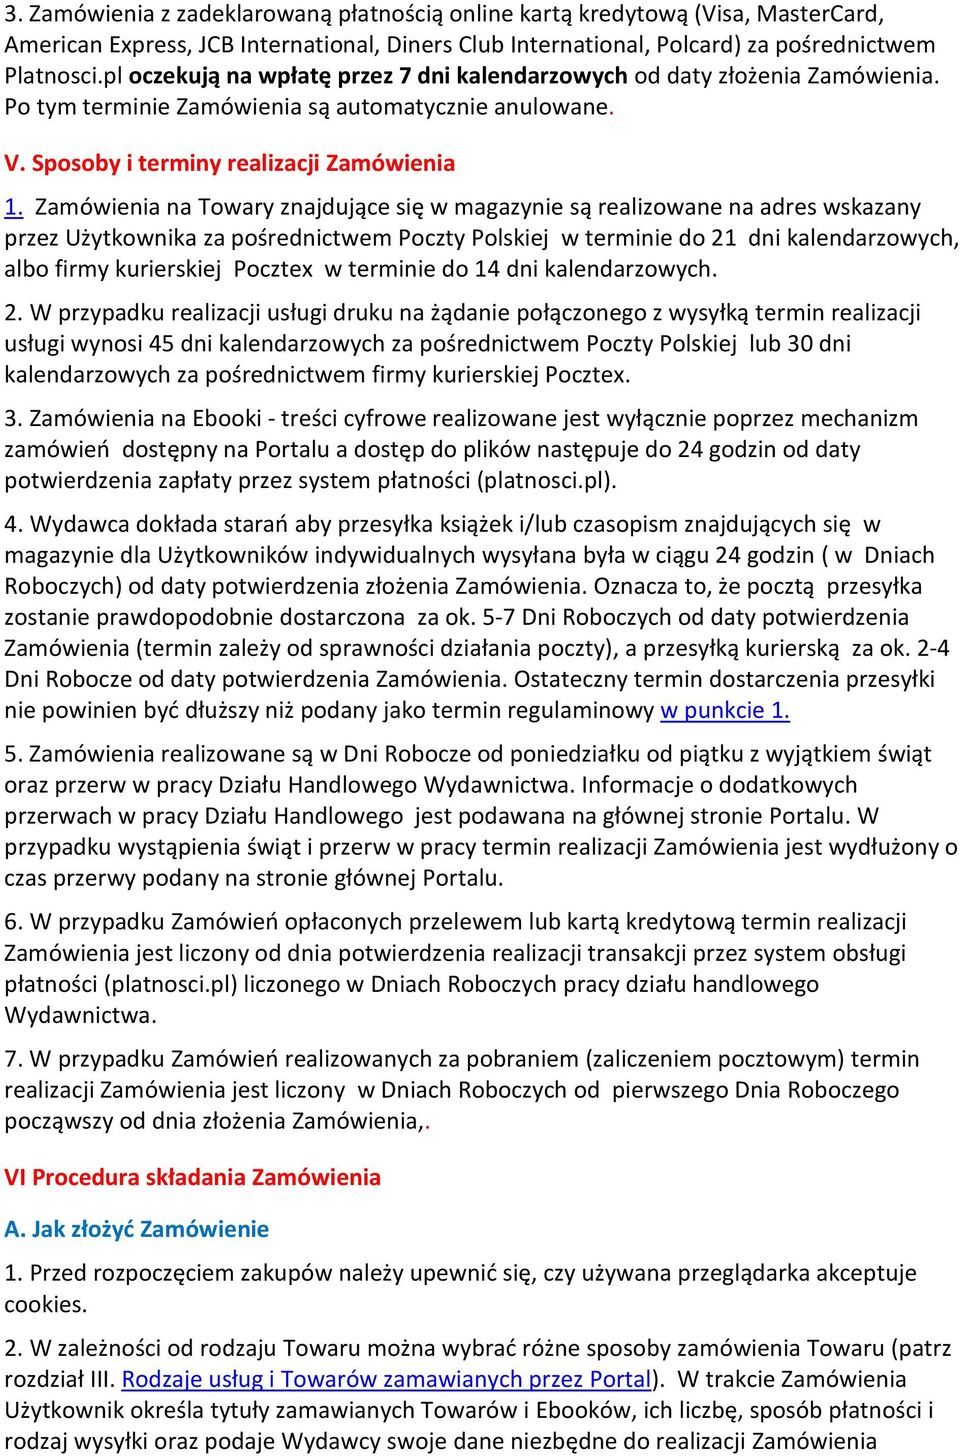 Zamówienia na Towary znajdujące się w magazynie są realizowane na adres wskazany przez Użytkownika za pośrednictwem Poczty Polskiej w terminie do 21 dni kalendarzowych, albo firmy kurierskiej Pocztex